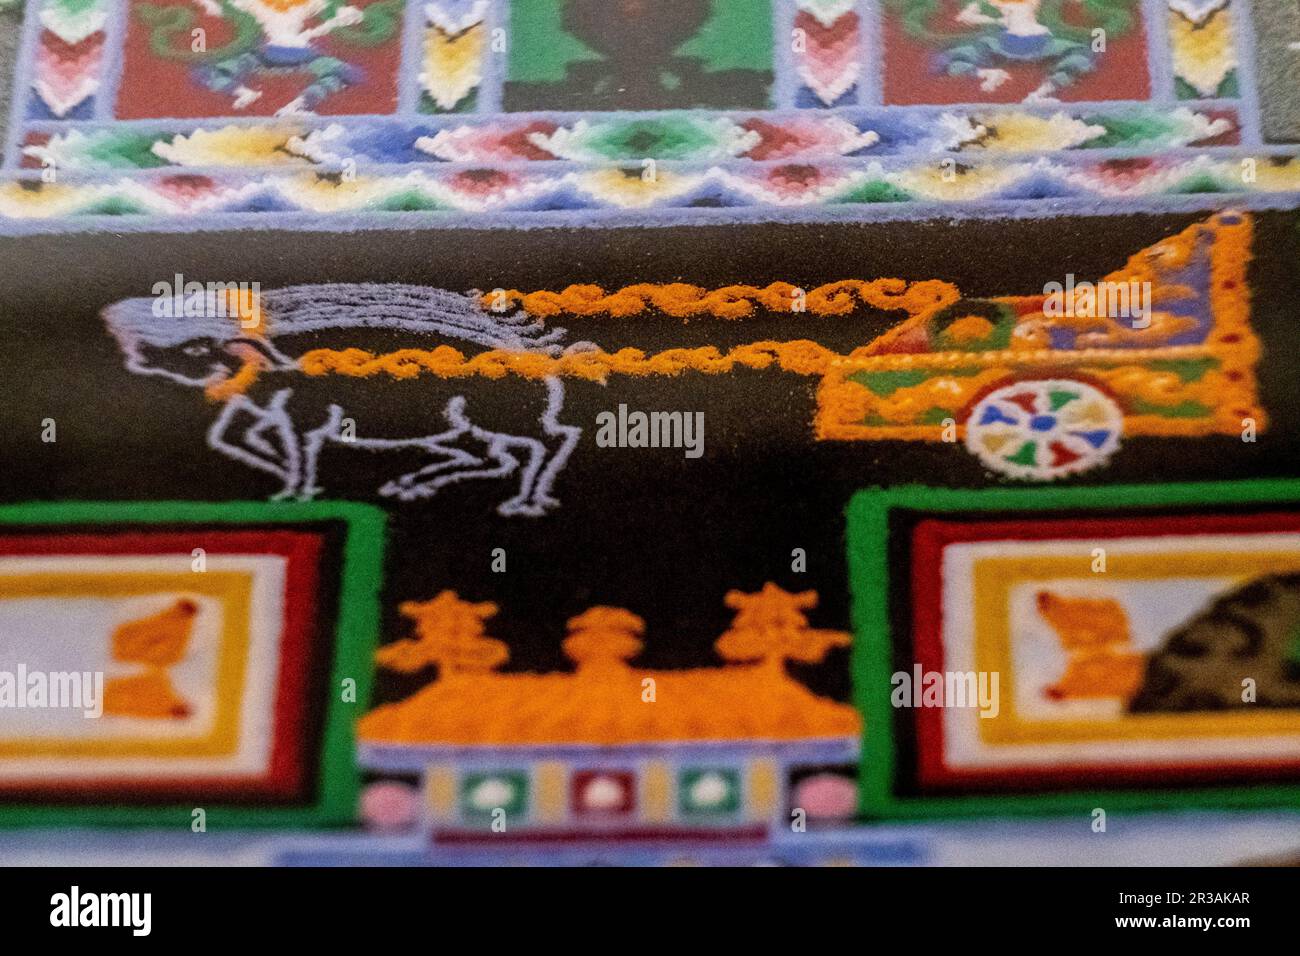 pig drawn cart, Kalachakcra buddhist mandala, Dalai Lama gift, pollensa museum, Majorca, Balearic Islands, Spain. Stock Photo